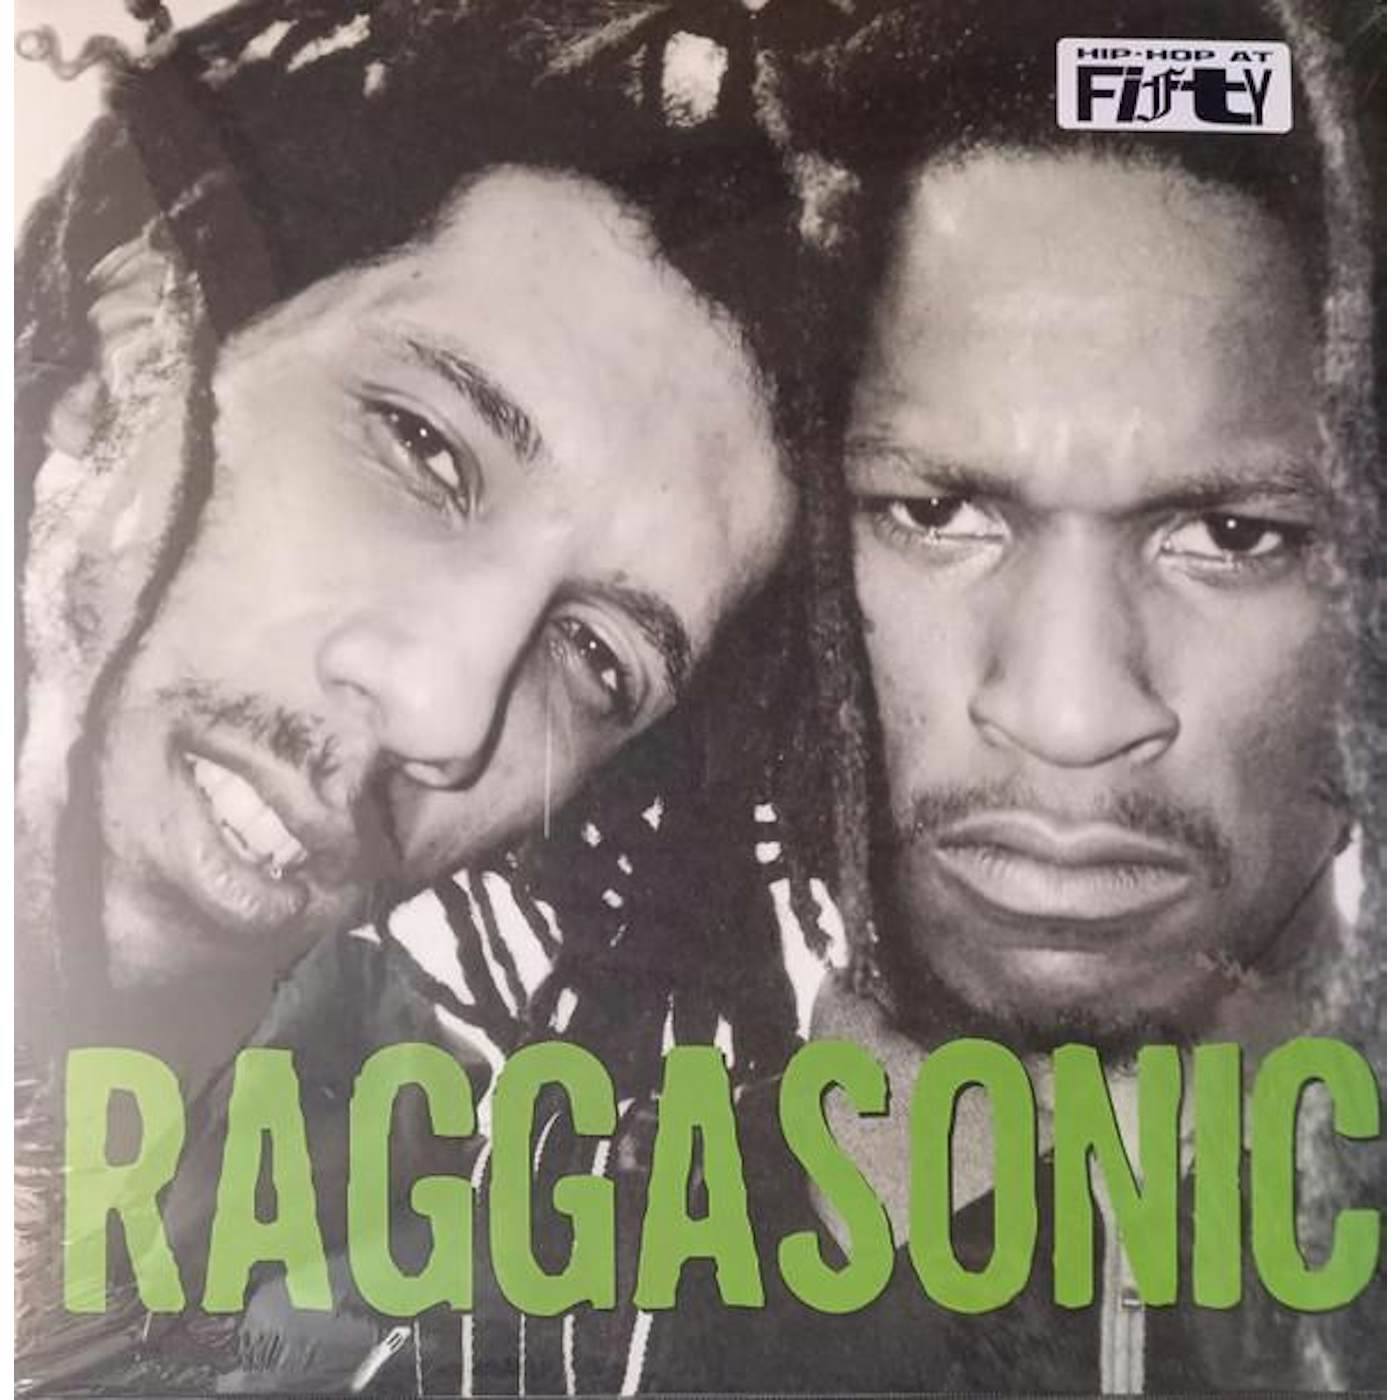 RAGGASONIC Vinyl Record